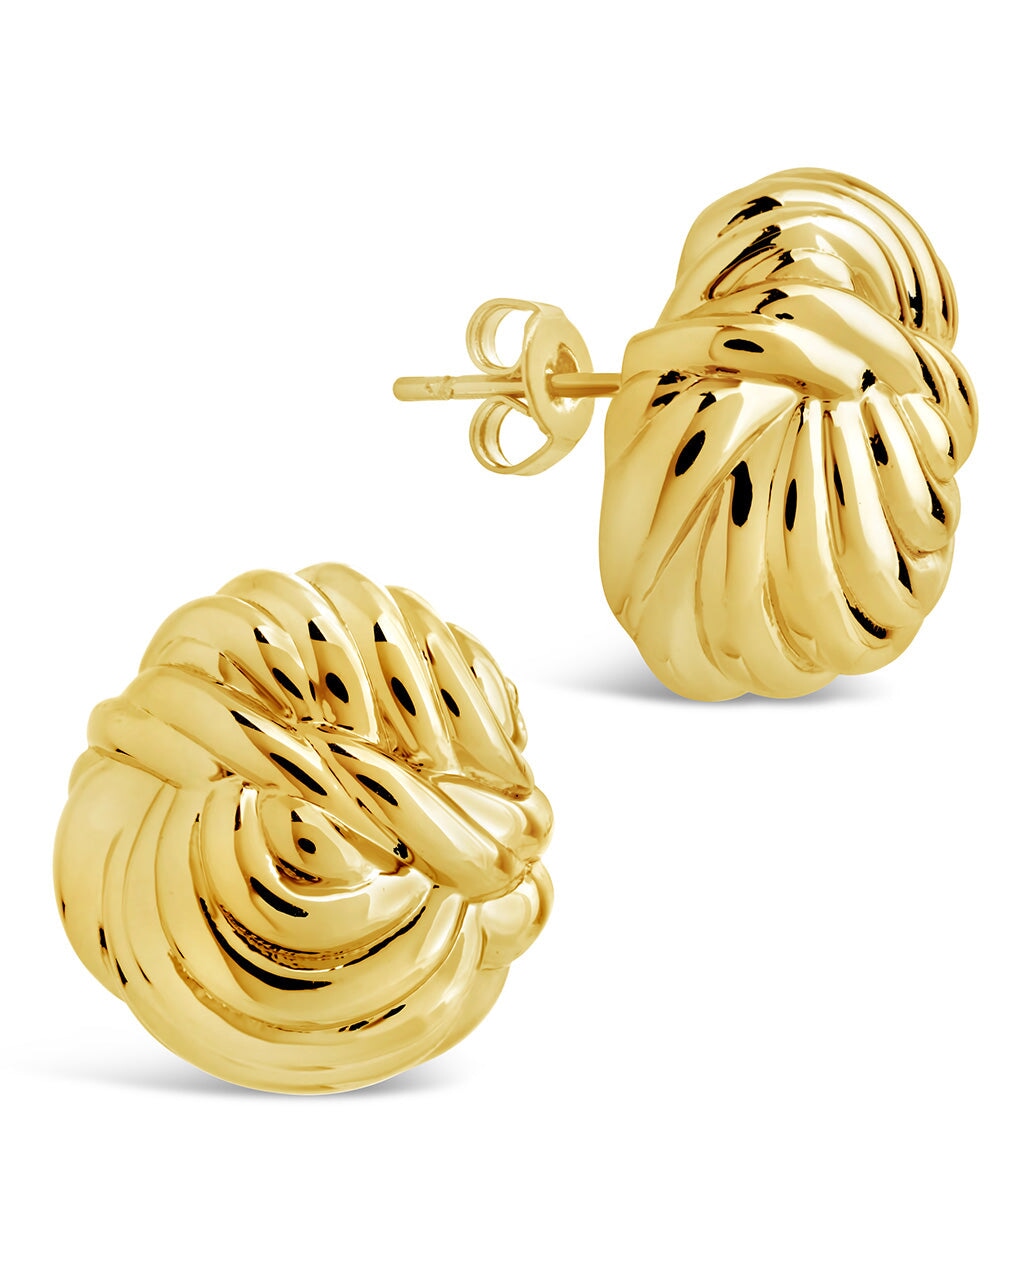 Brioche Twist Stud Earrings Earring Sterling Forever Gold 